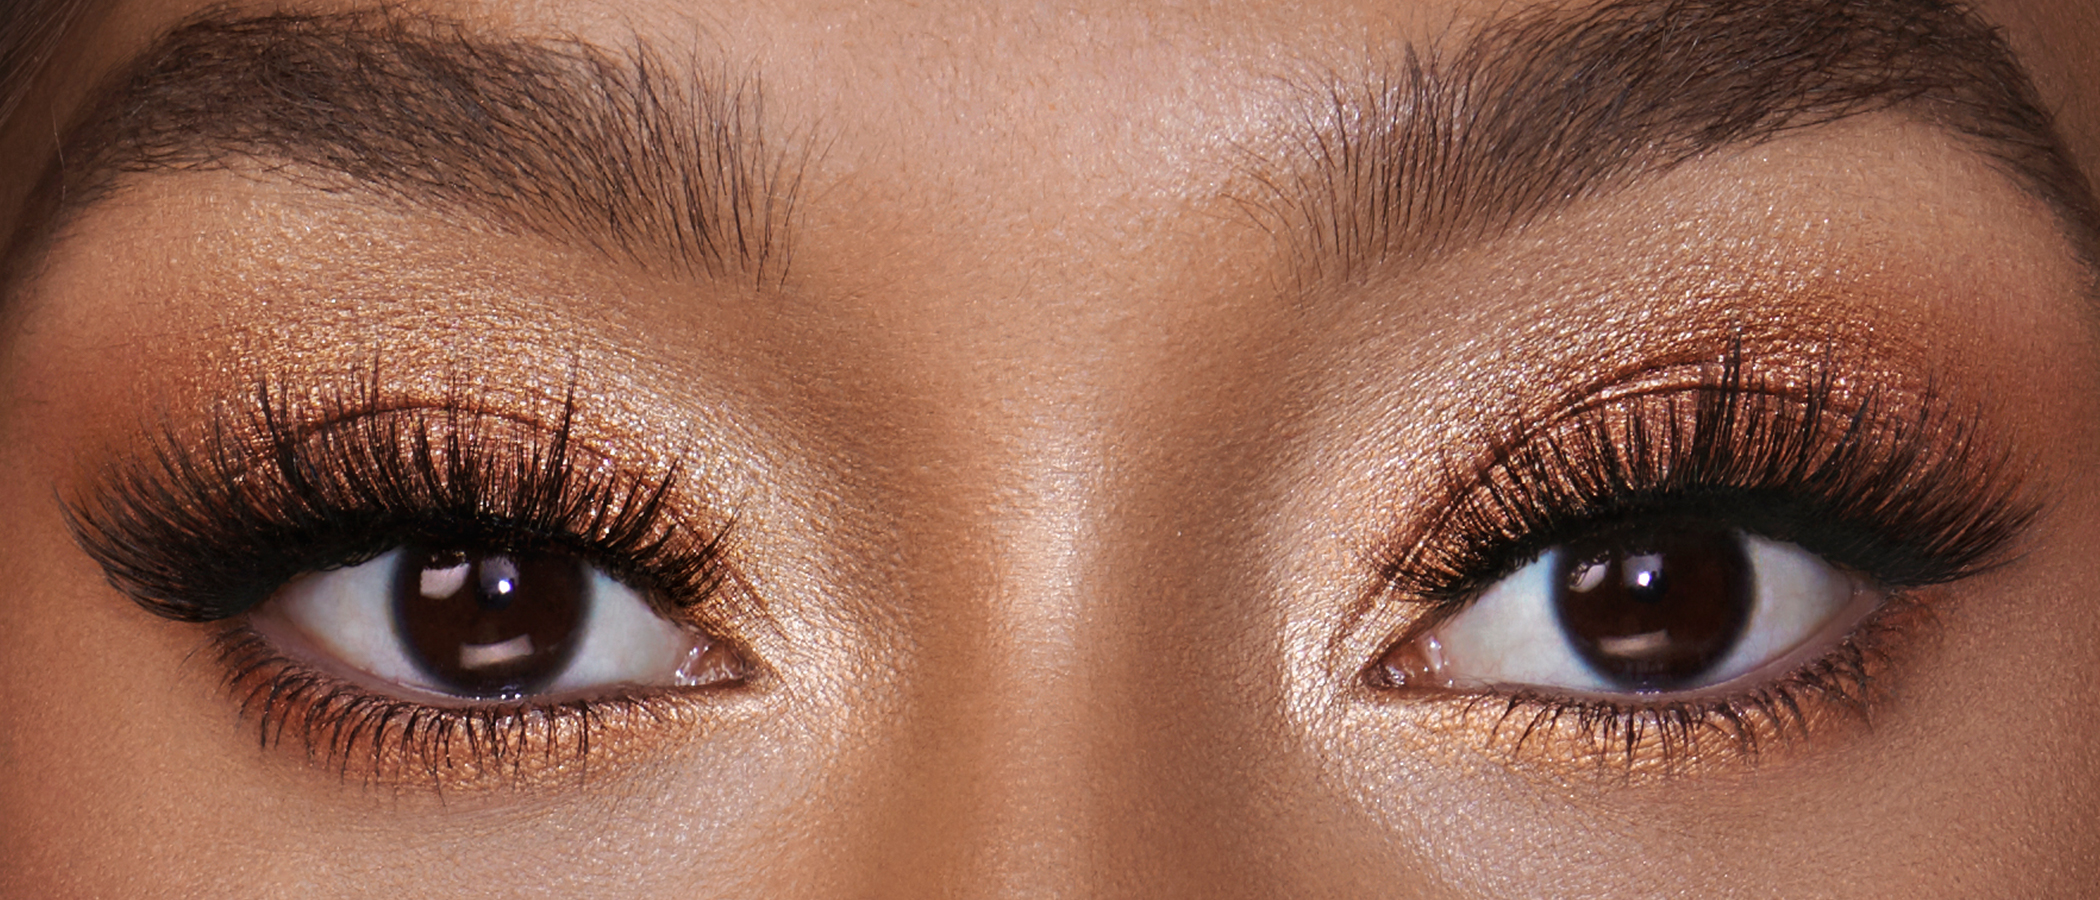 Augen-make-up-tutorials: Lidschatten, Eyeliner Und Mehr